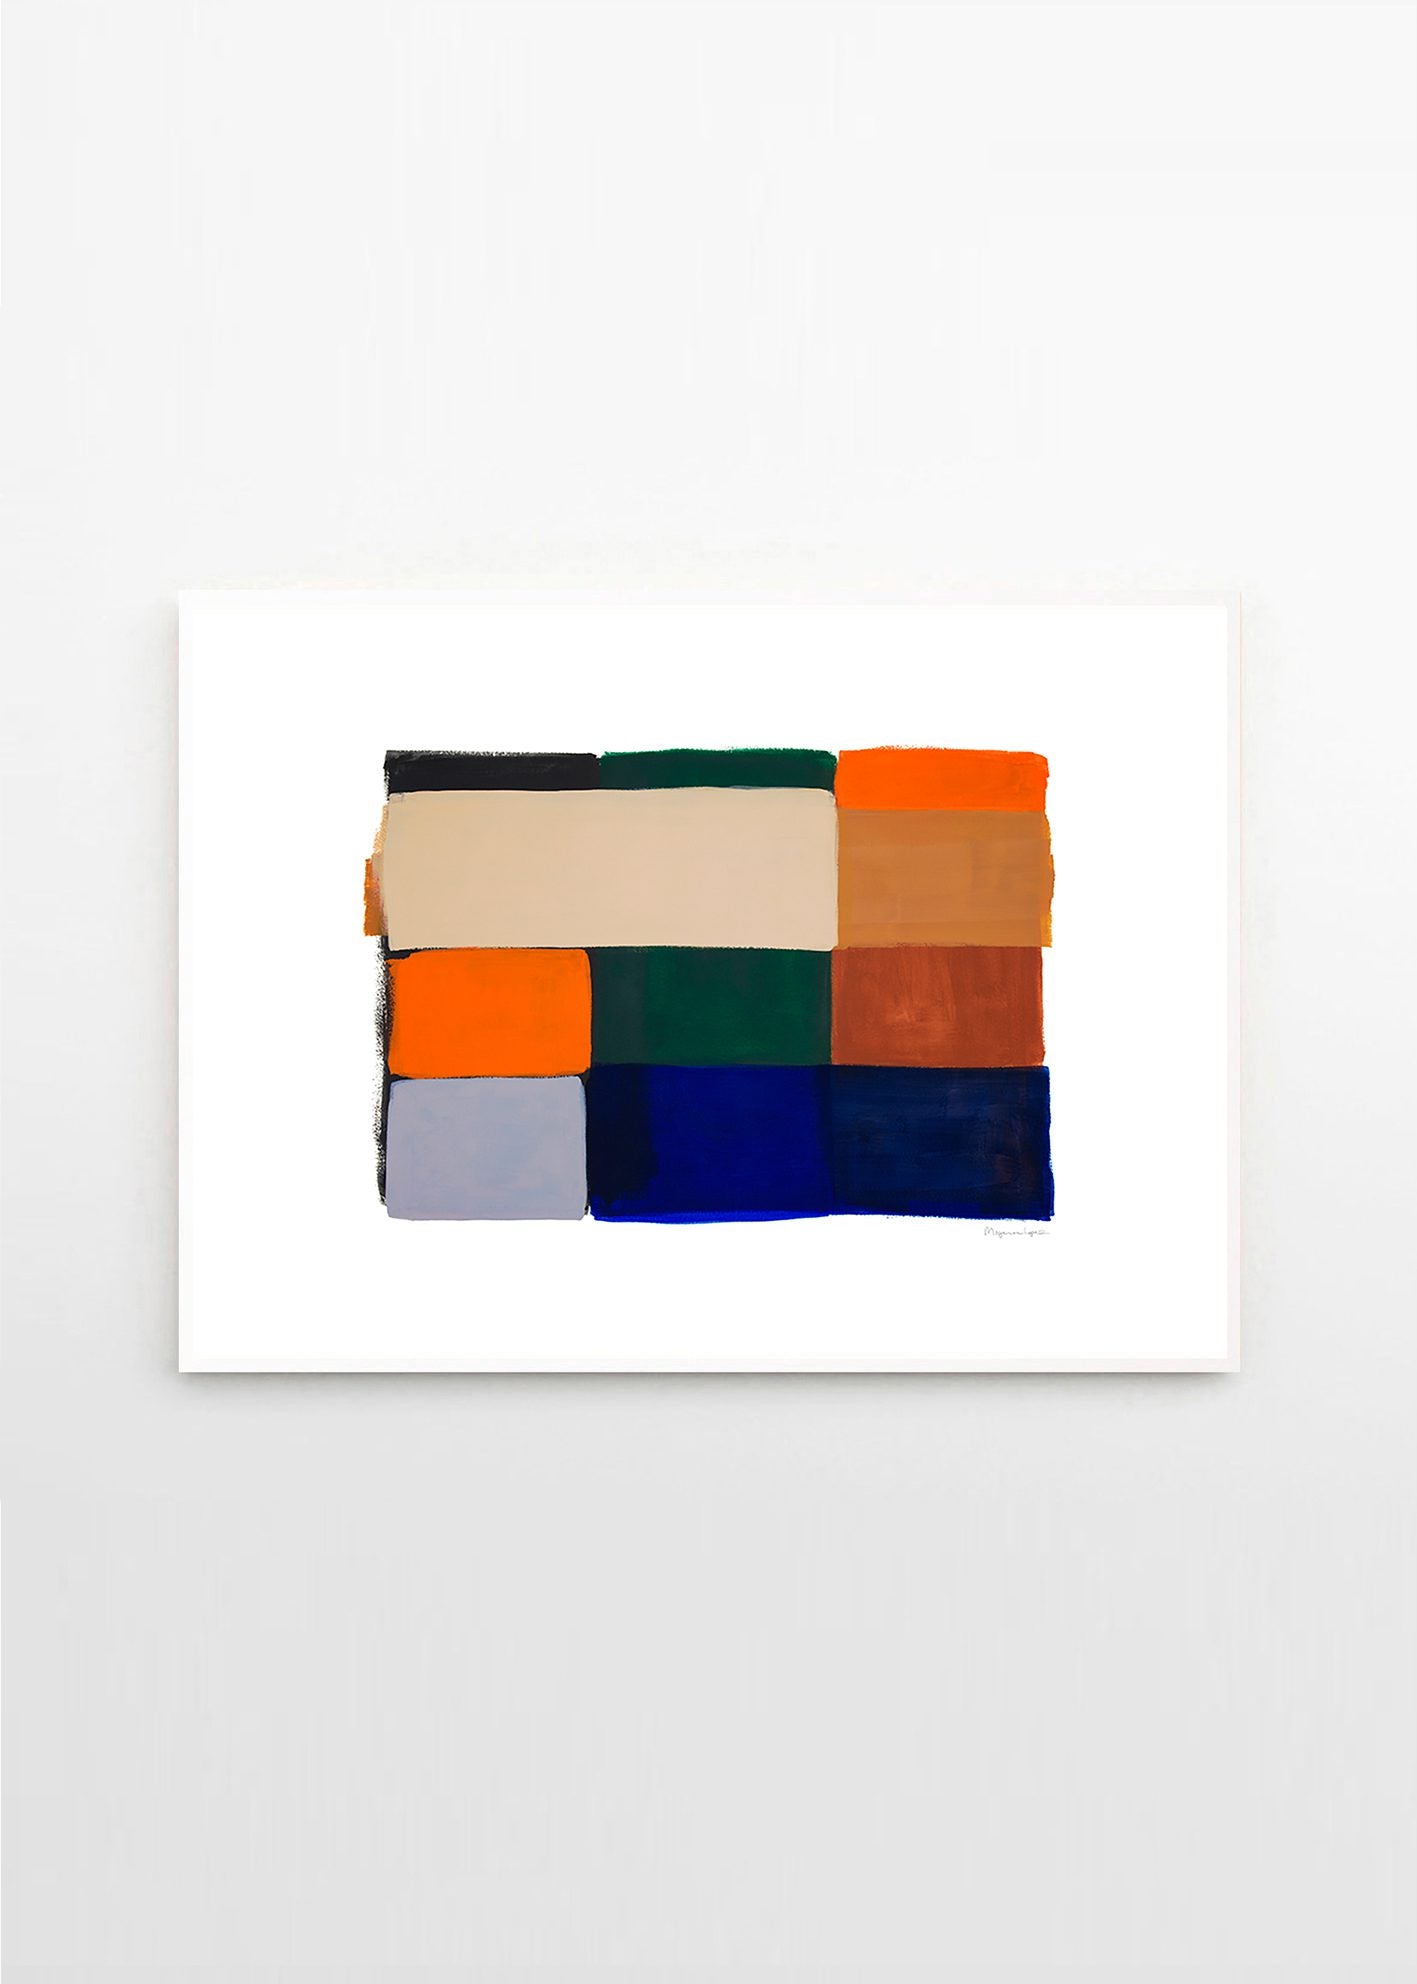 Colour Squares 01 by Berit Mogensen Lopez